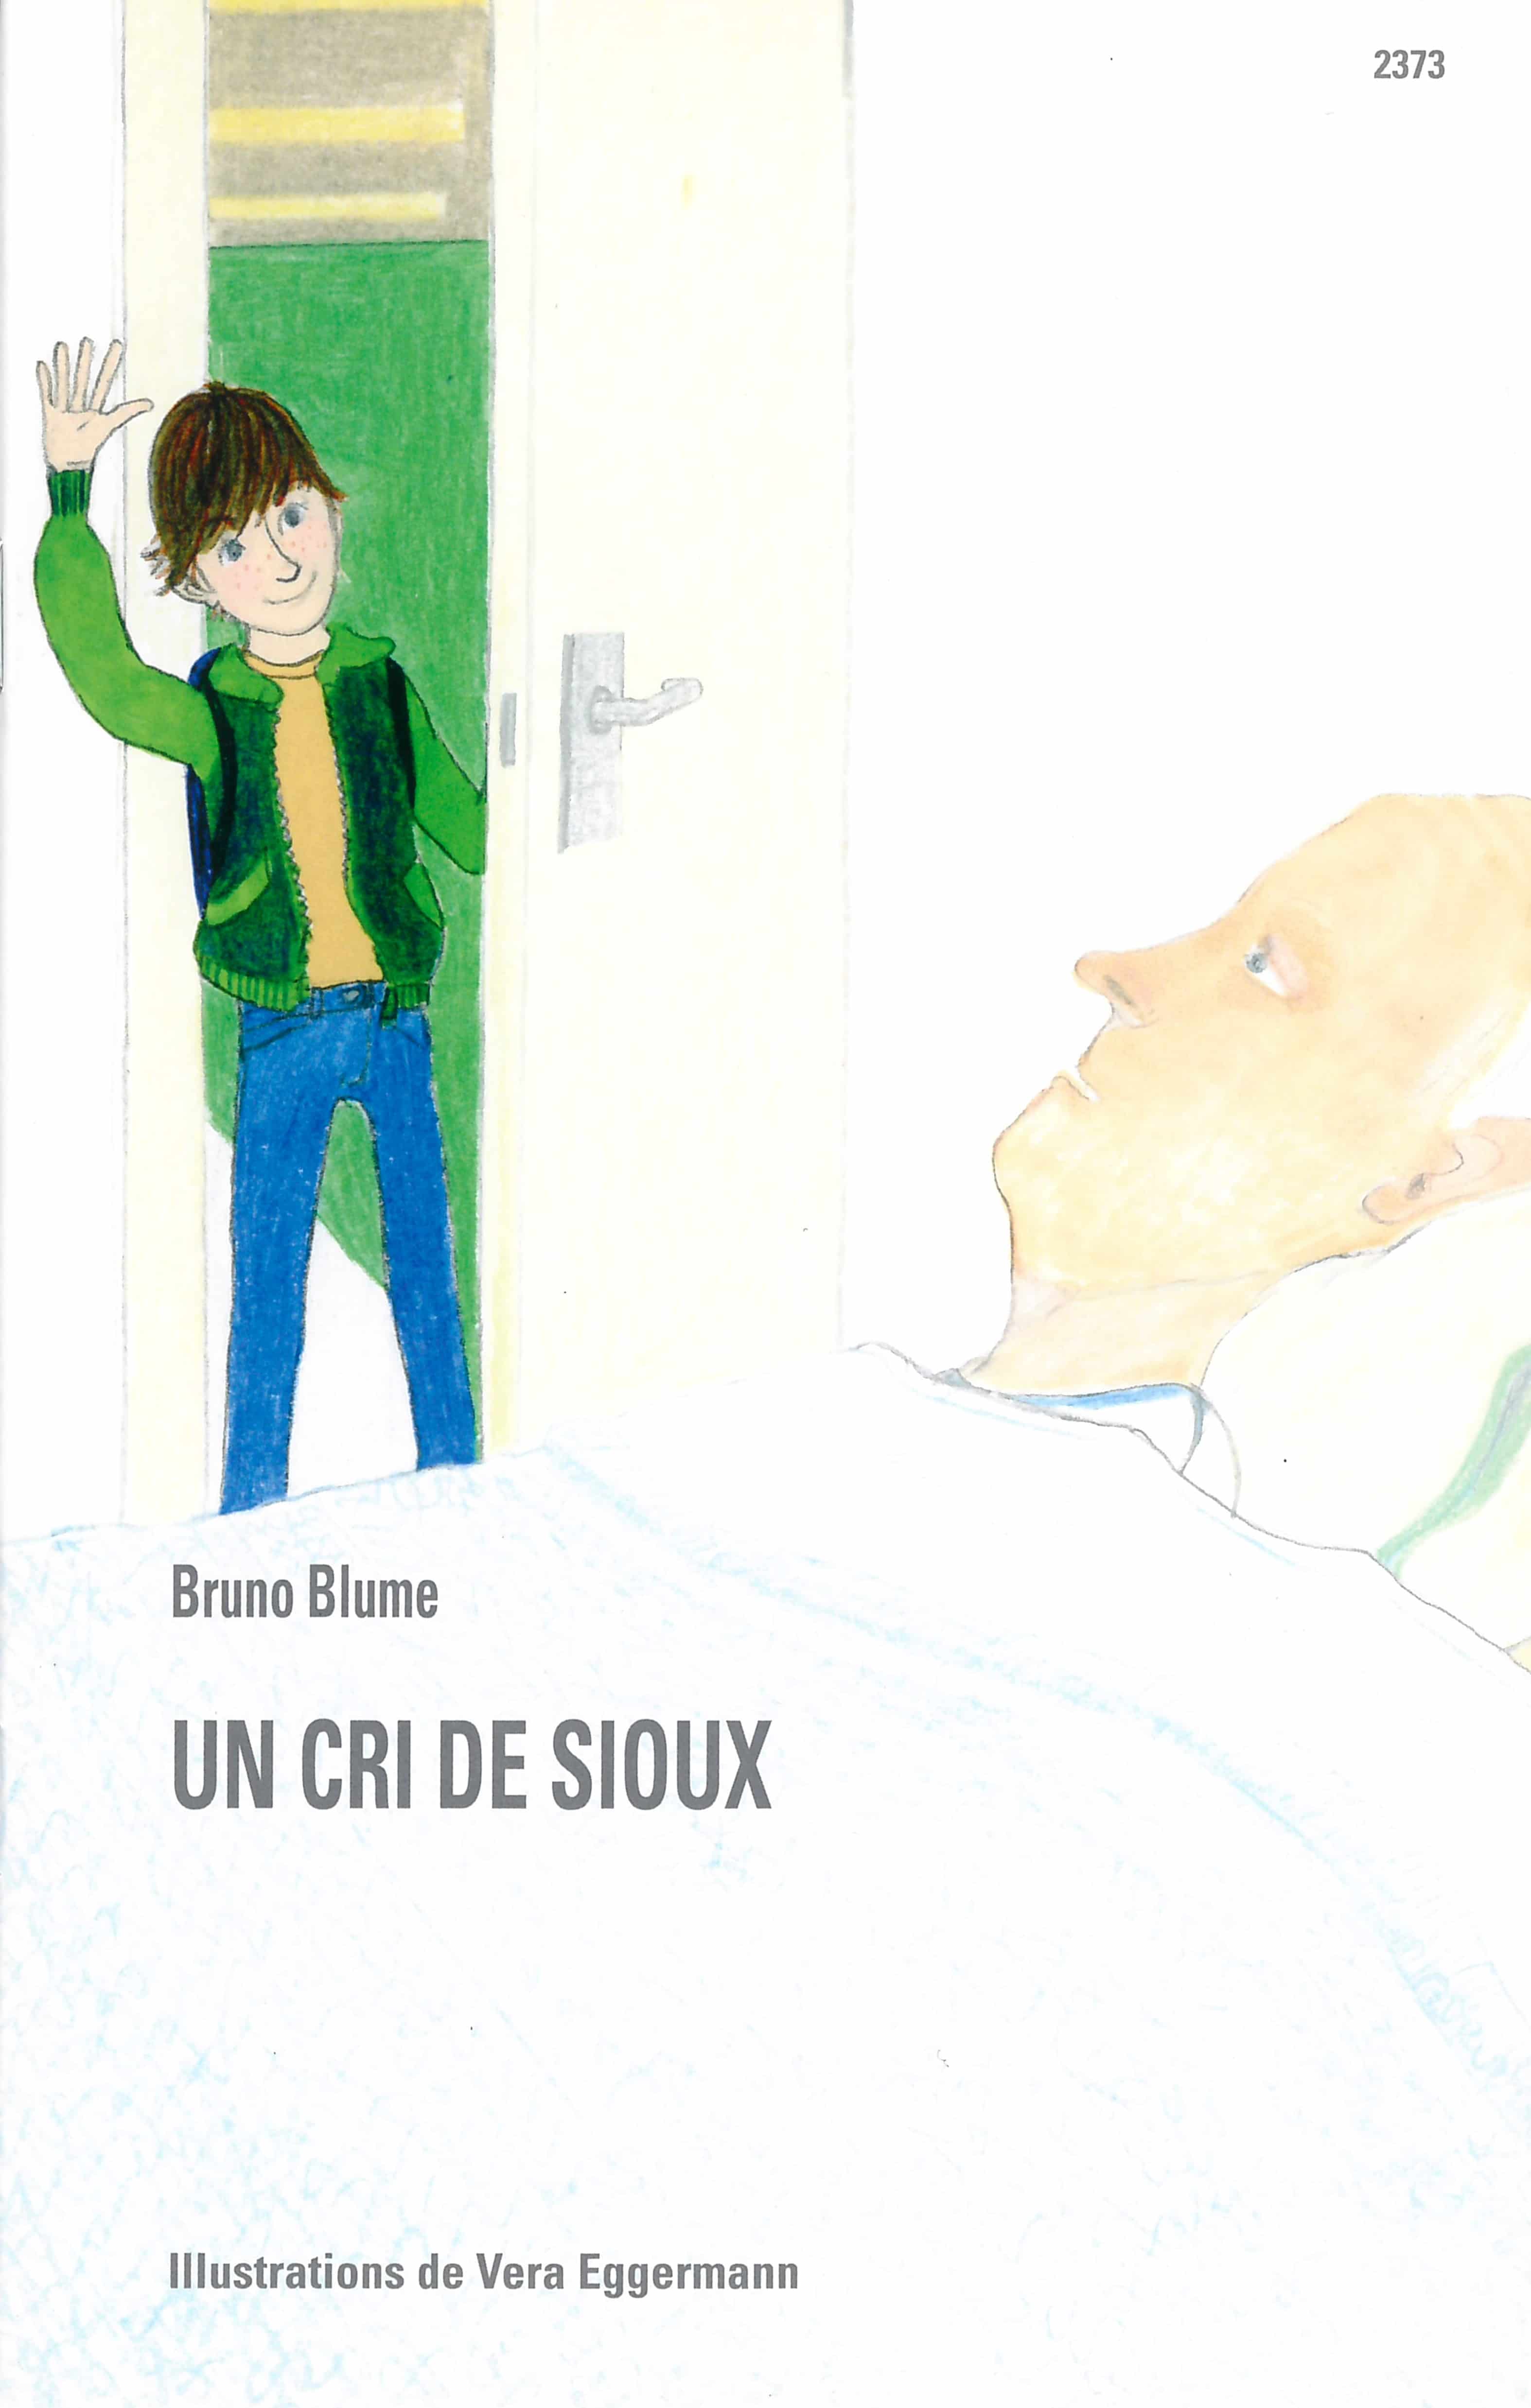 Un cri de sioux, un livre pour enfants de Bruno Blume, illustré par Vera Eggermann, éditions de l'OSL, Identité 